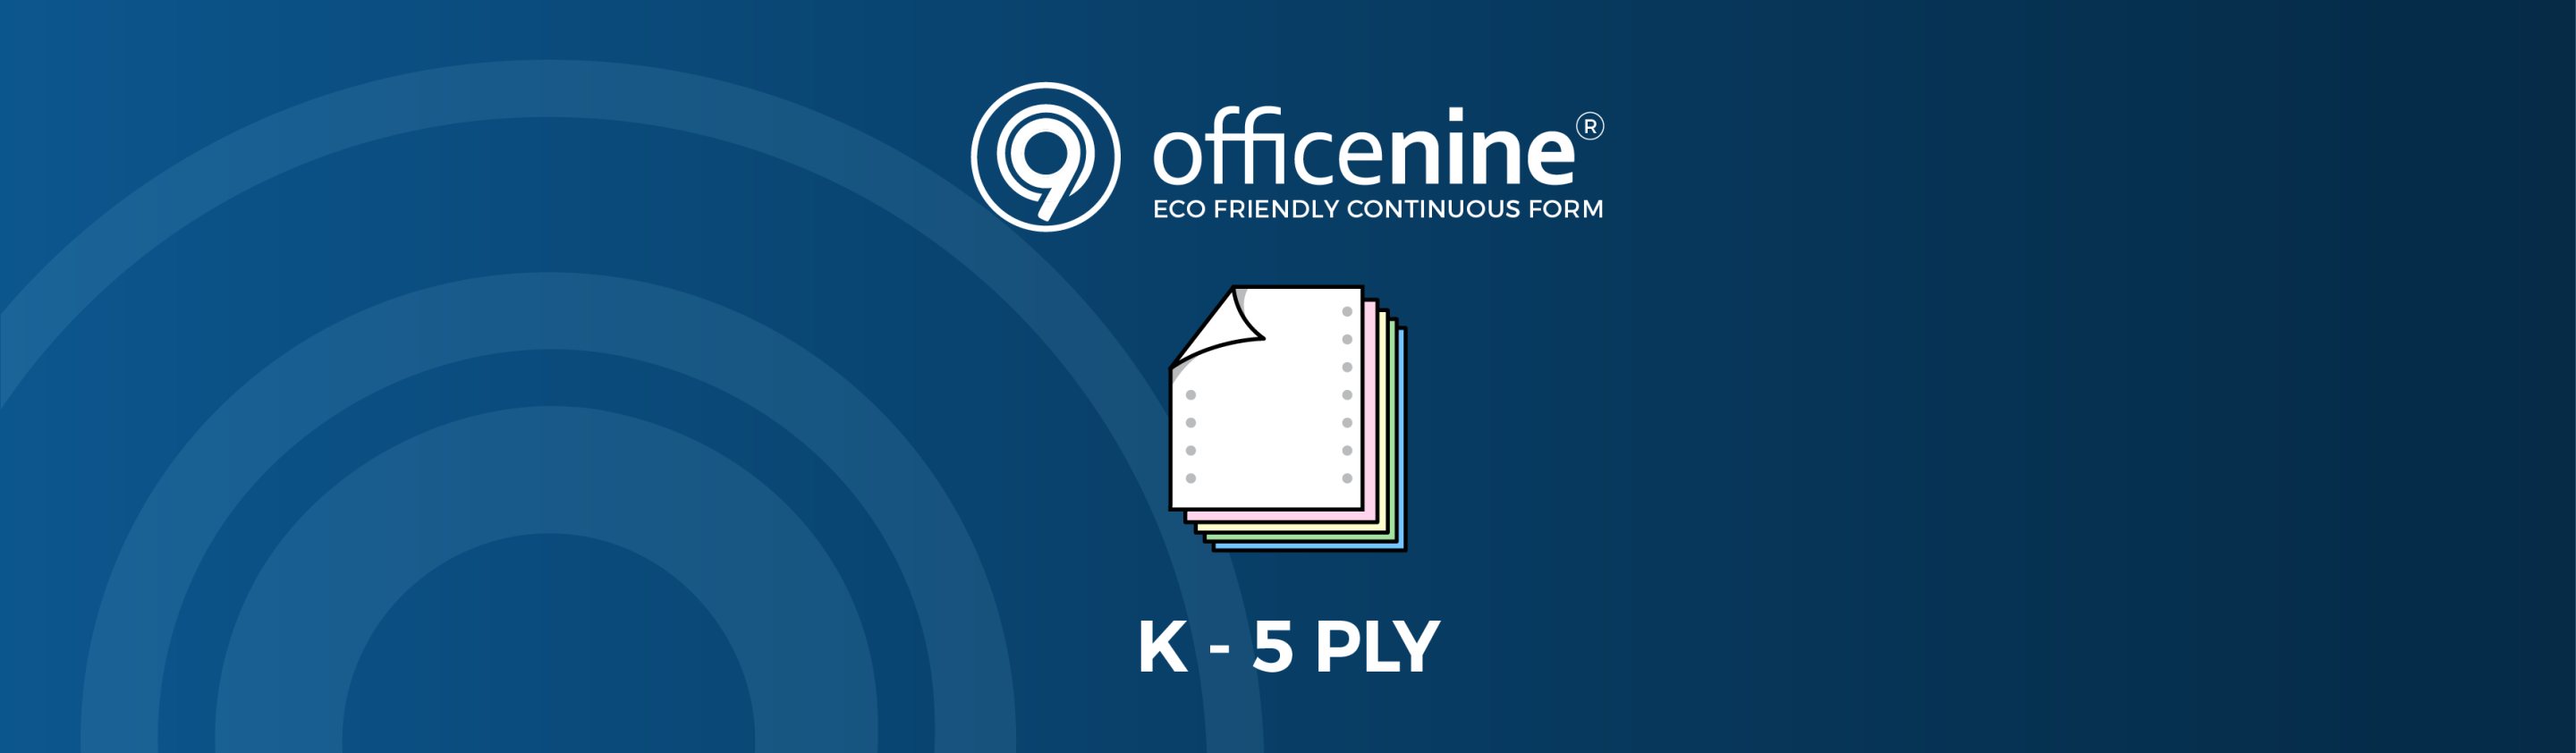 K-5-PLY Officenine